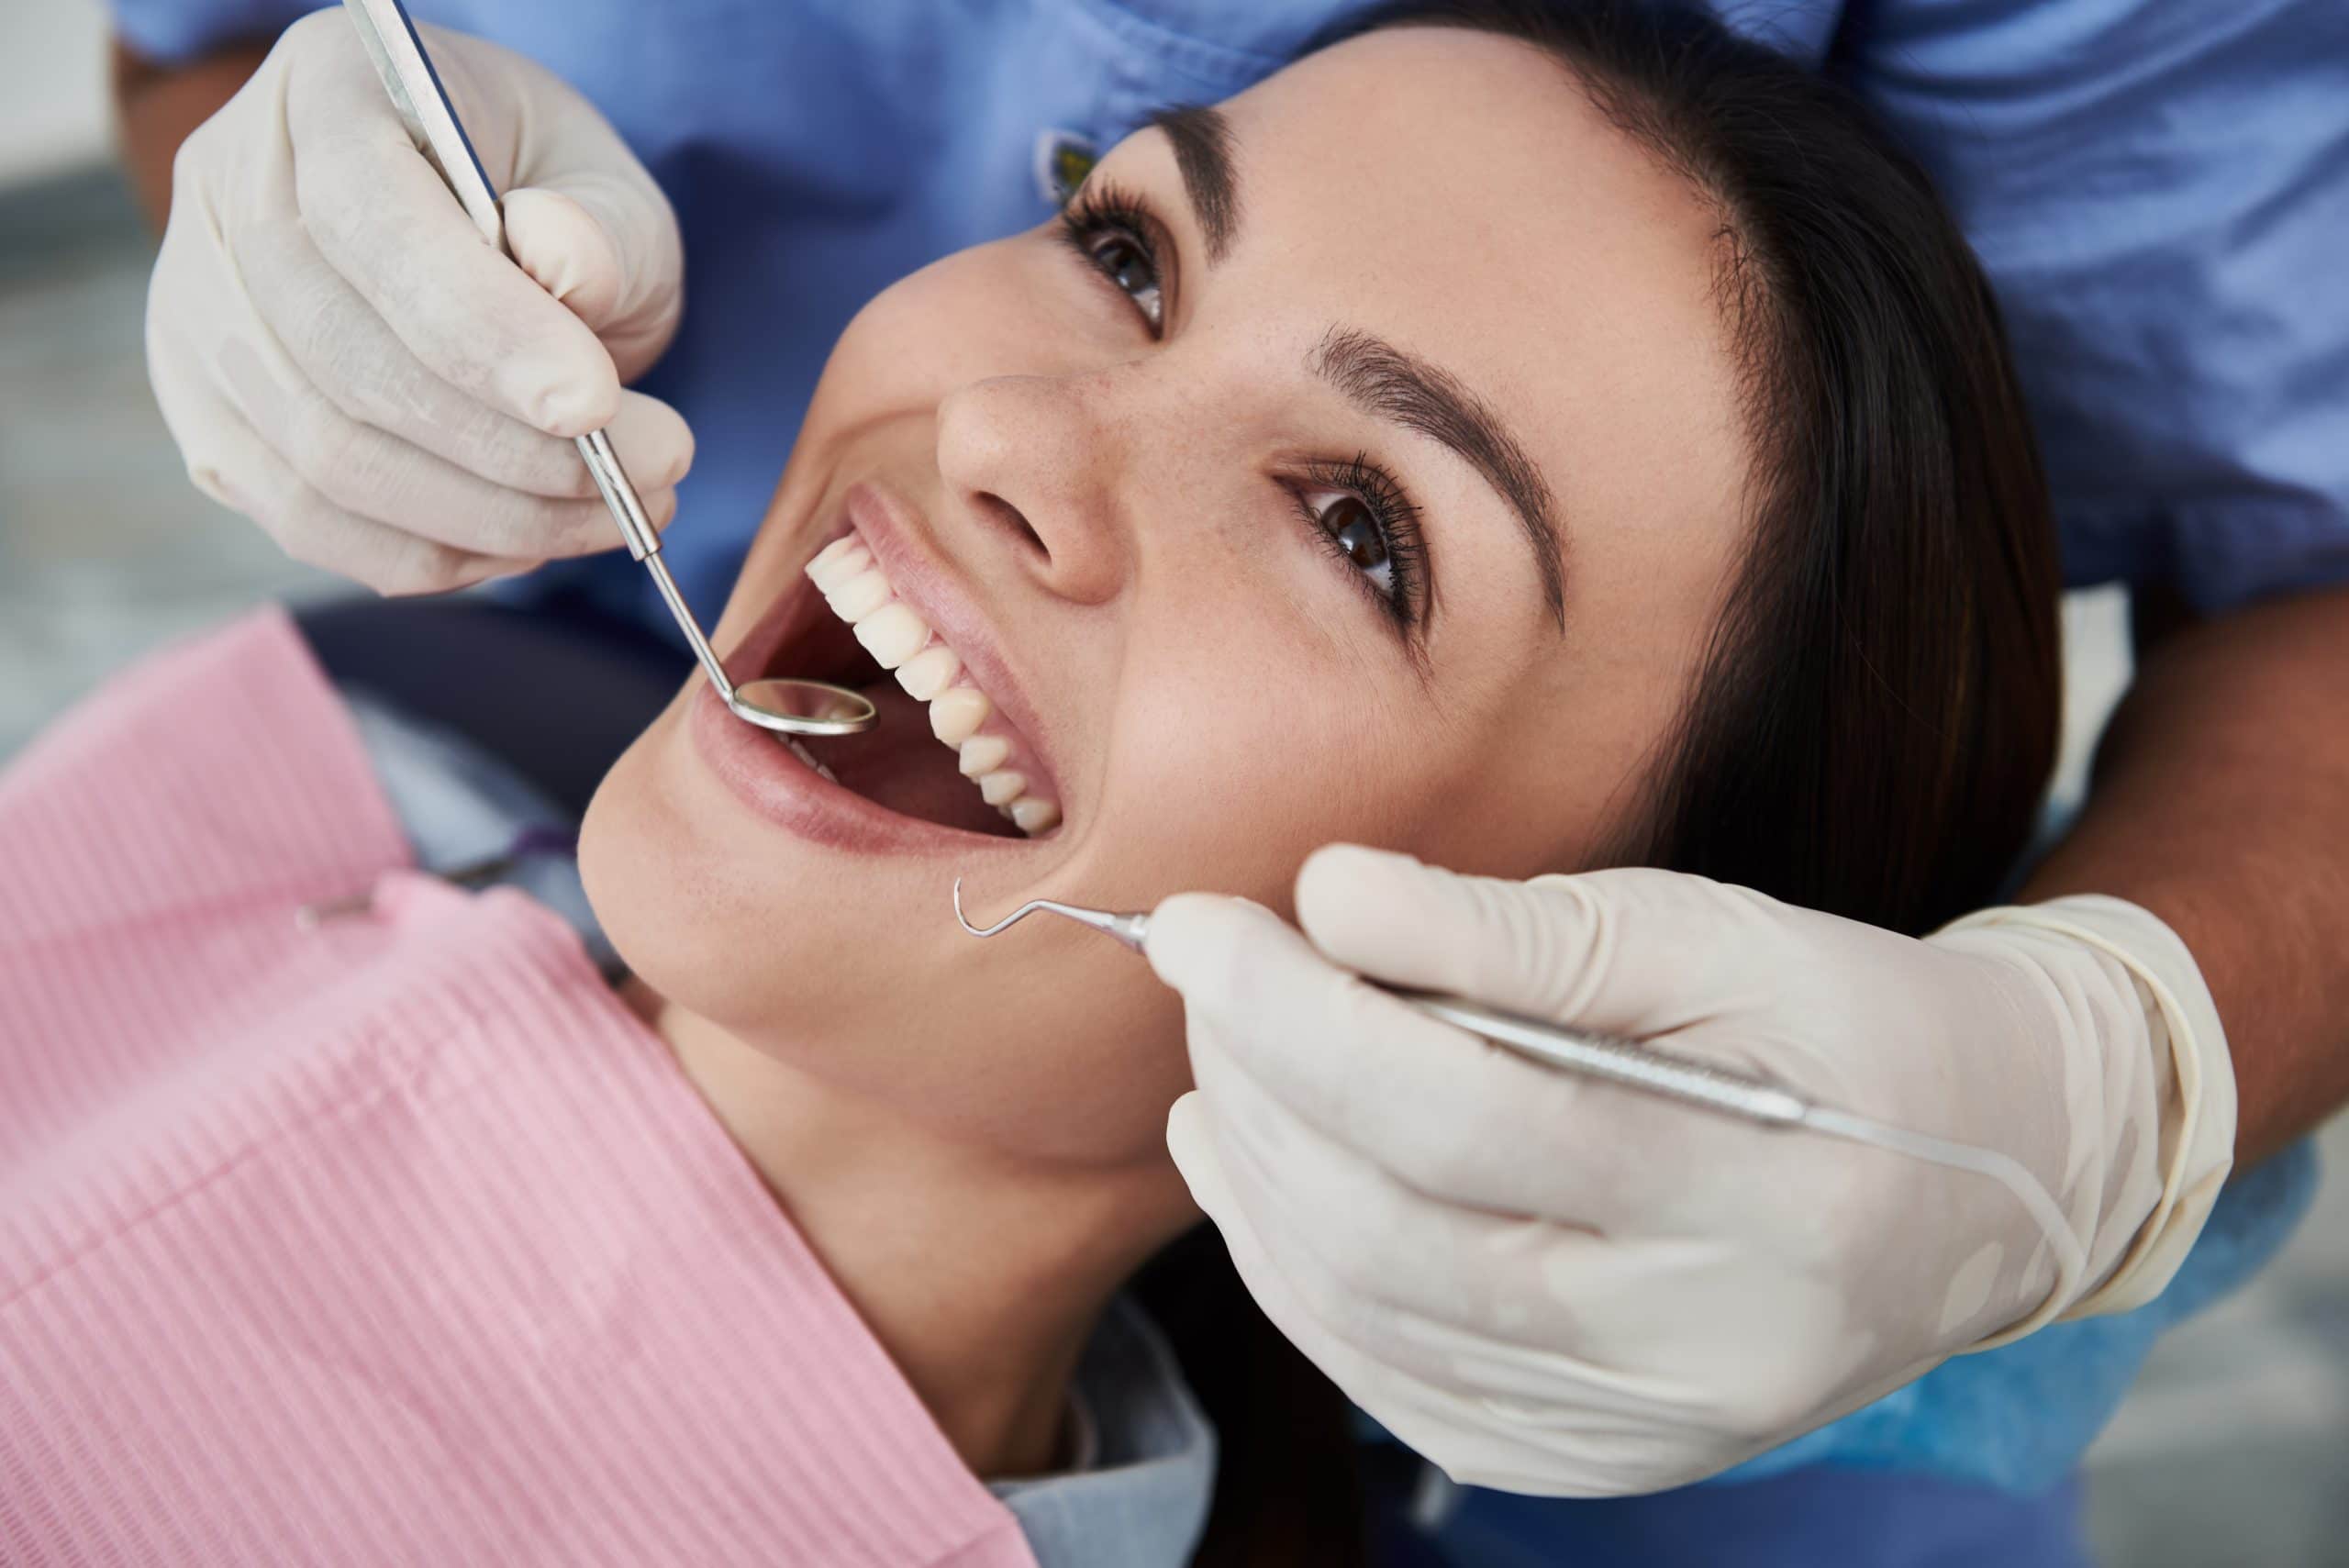 Oral Exams at Pristine Dental Care